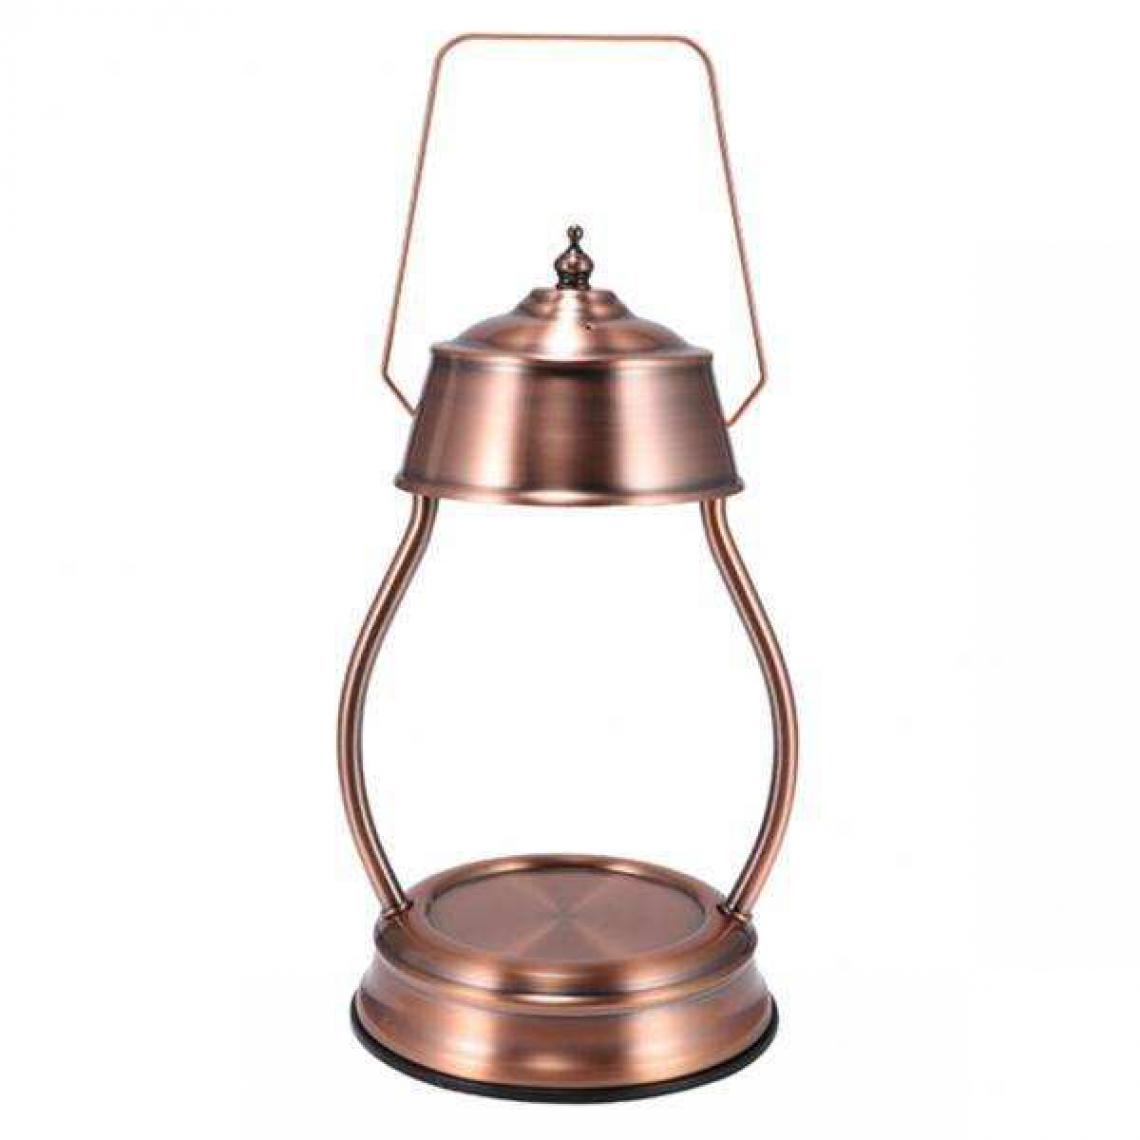 marque generique - Lampe de chauffe-bougie électrique faisant fondre la cire - Bougeoirs, chandeliers